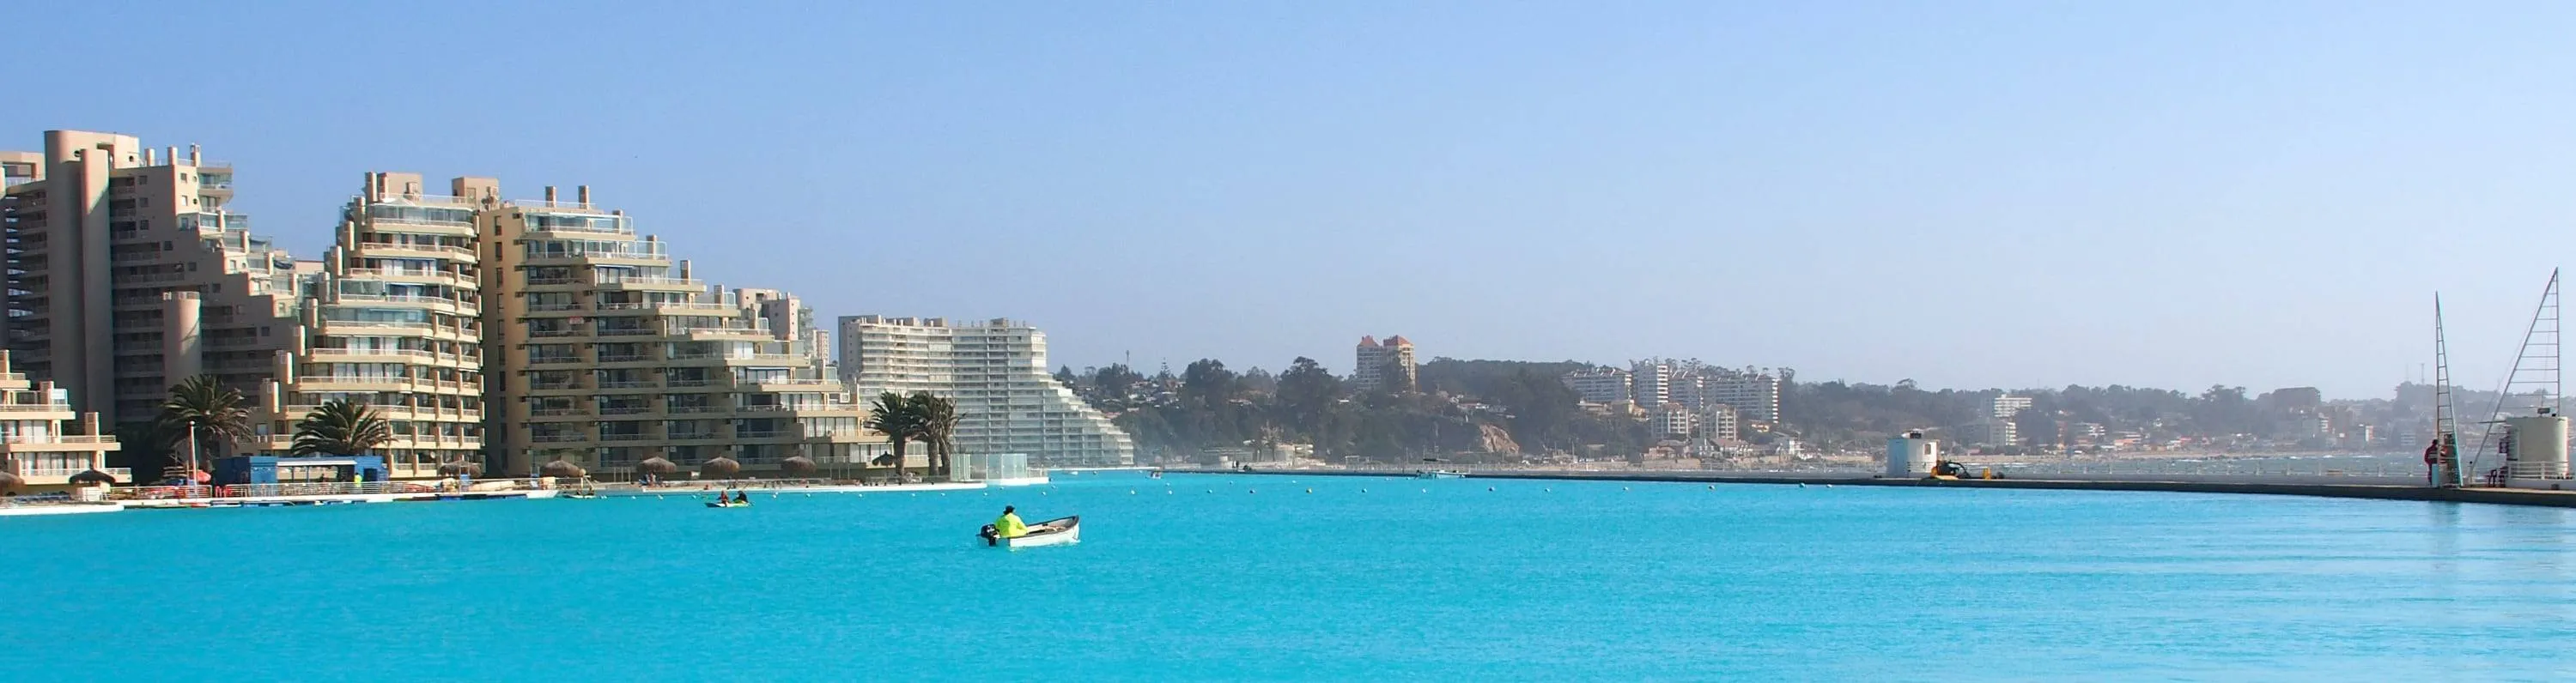 Maailma suurima basseiniga puhkekeskus San Alfonso del Mar - ReisiGuru.ee